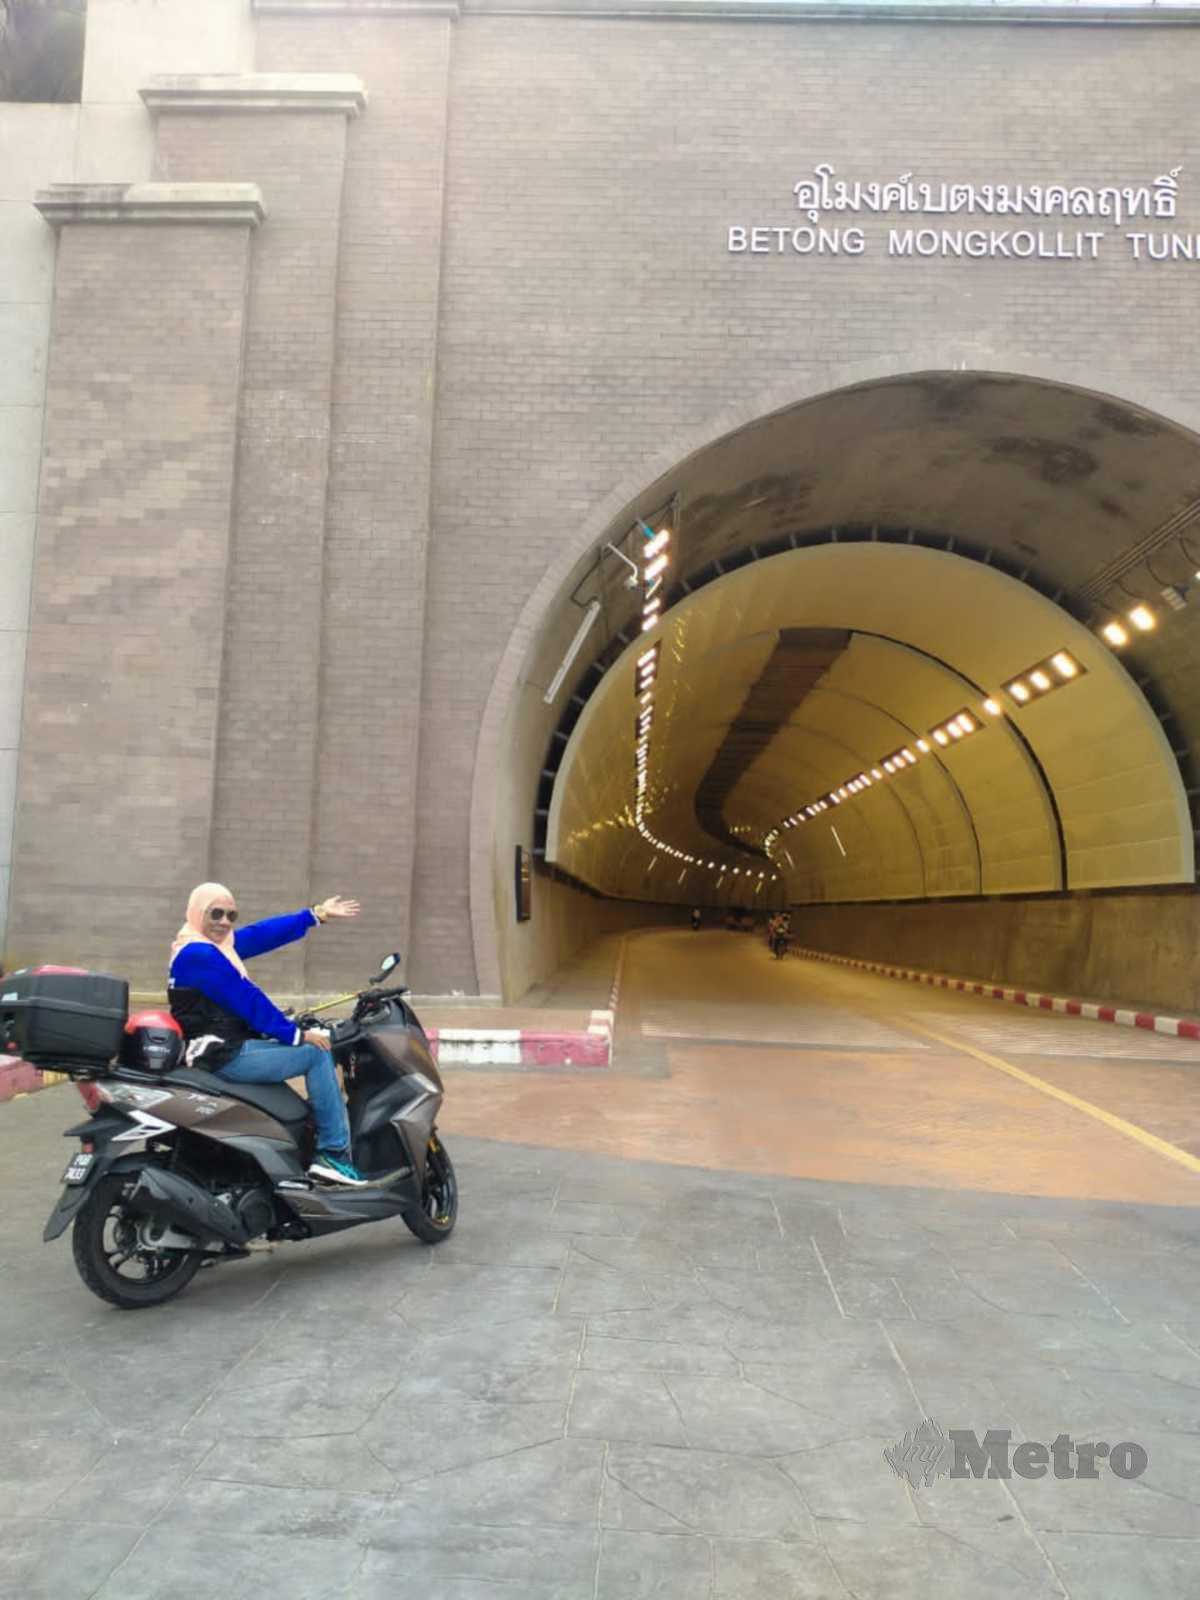 BERGAMBAR di hadapan terowong Betong, Thailand bersama motosikal skuter SYM 200.